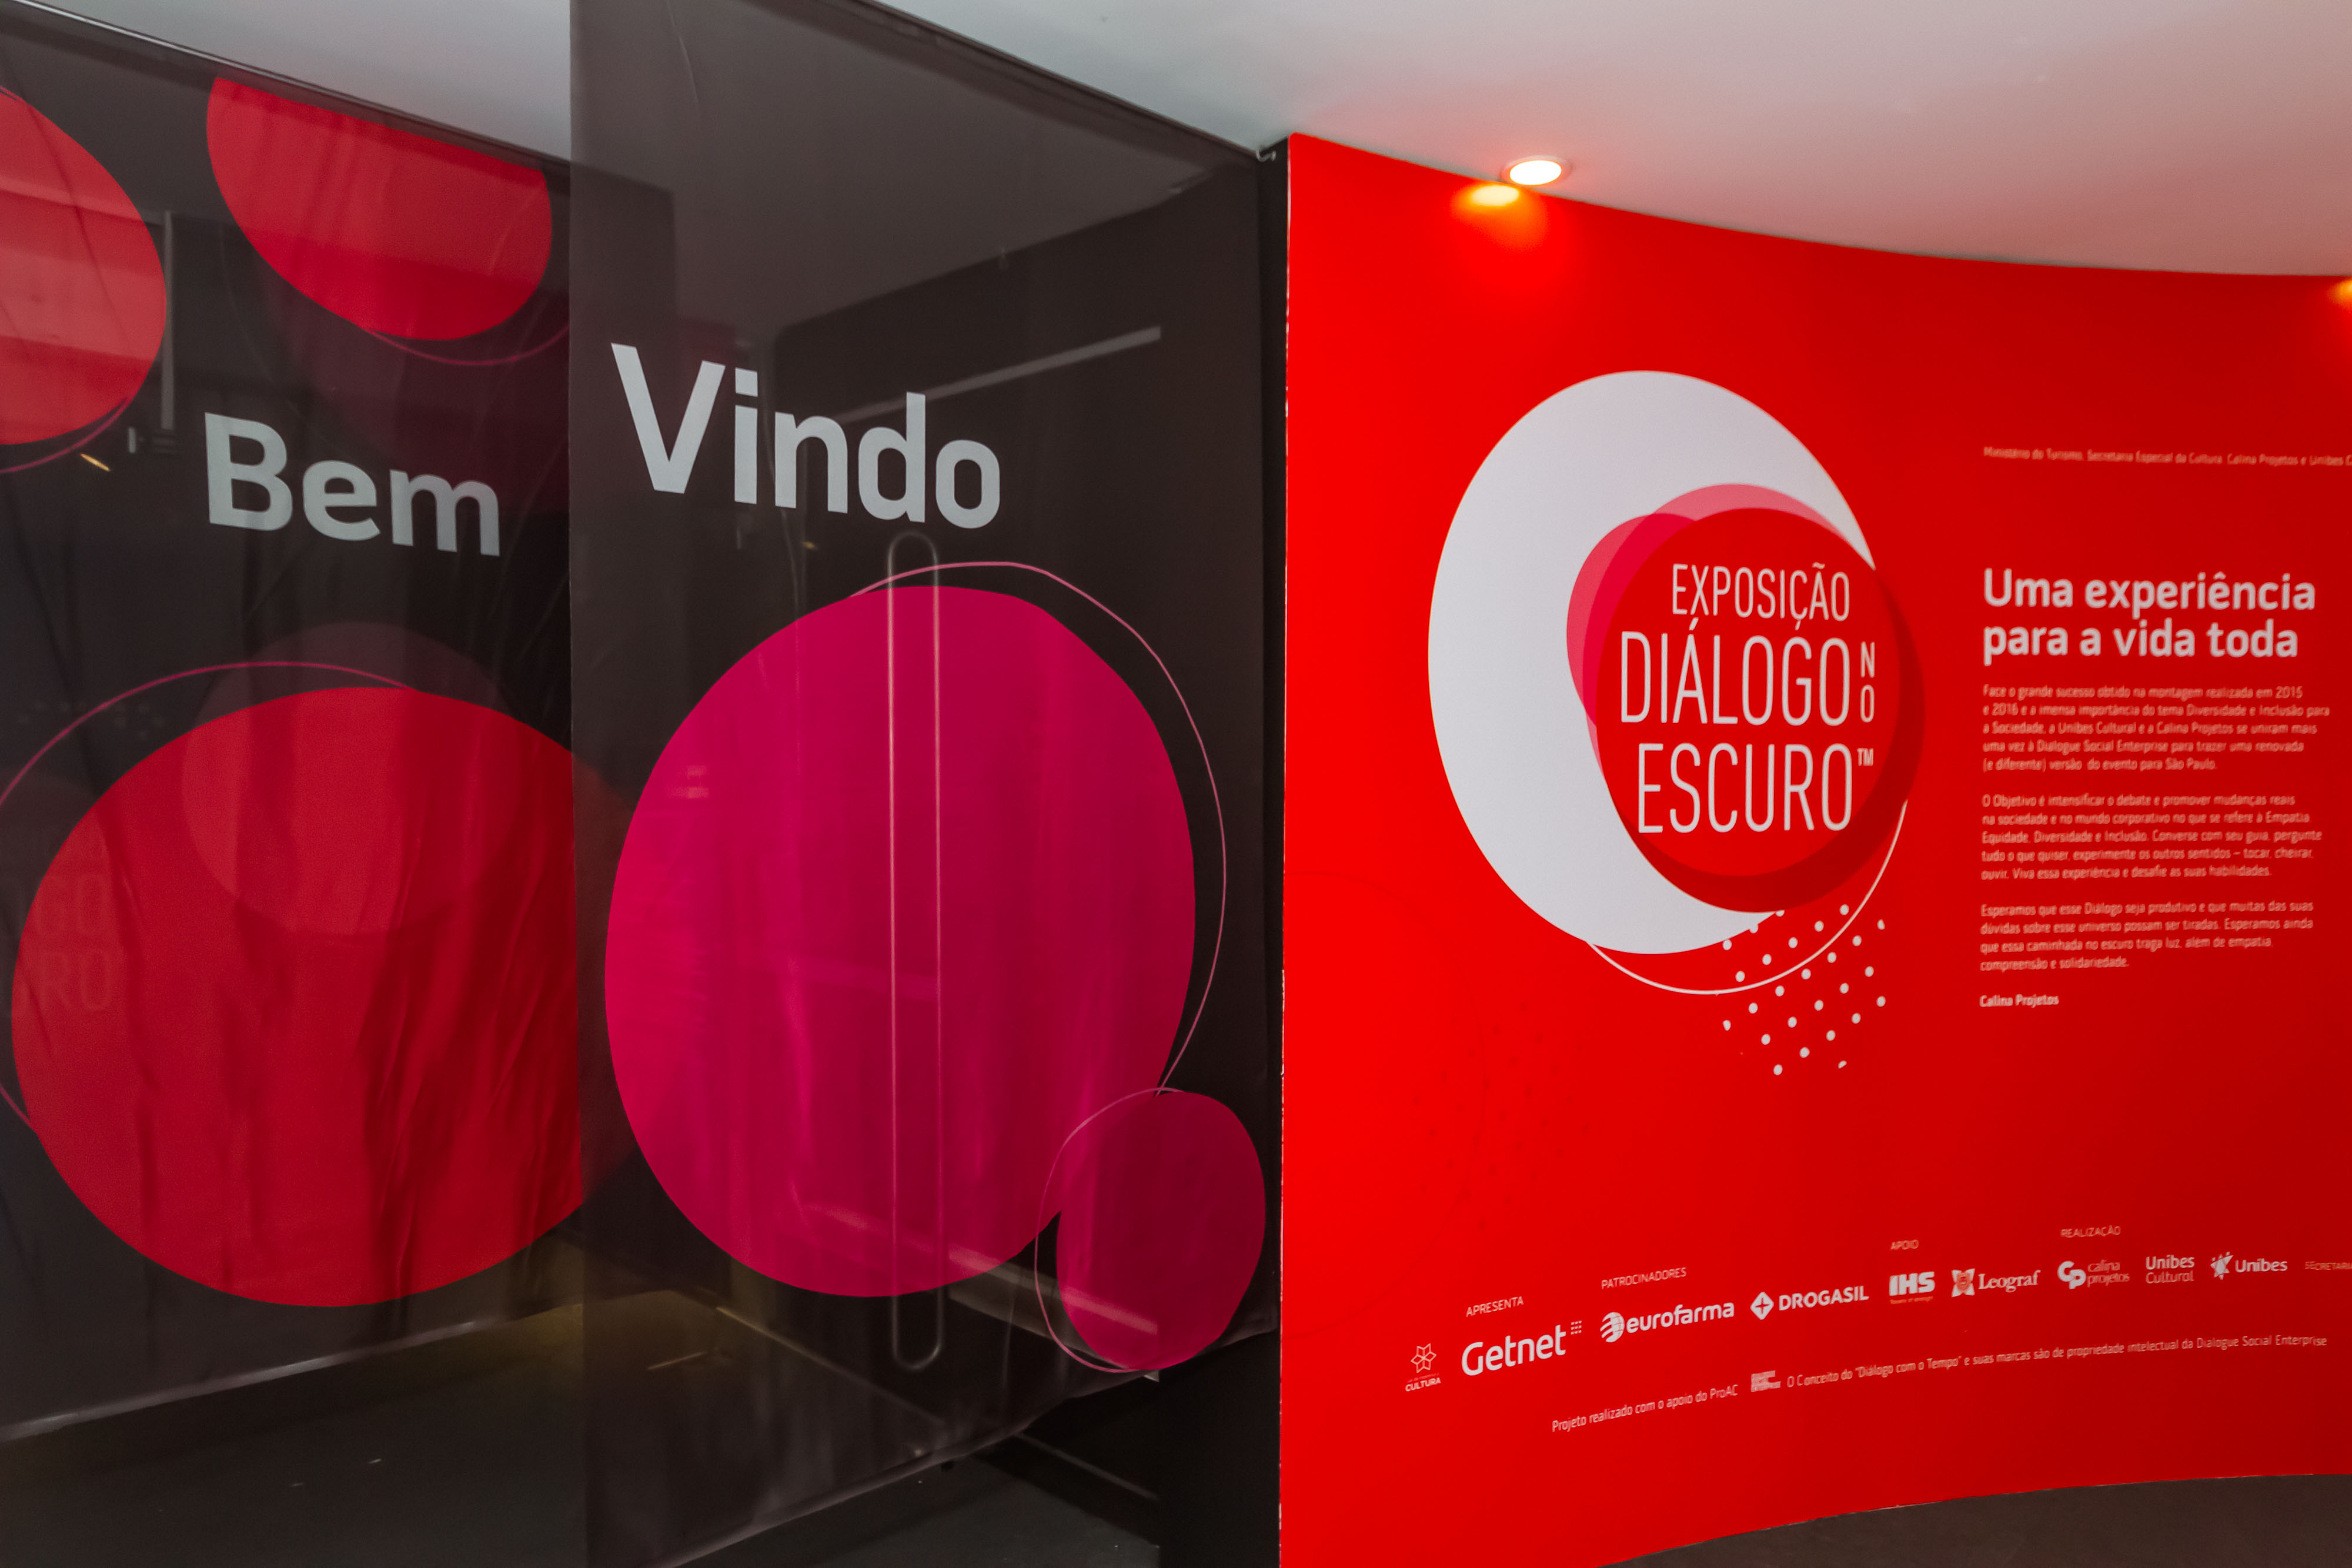 Foto da entrada com cortinas escritas bem vindo e parede vermelha a direita com logo da exposição e textos em branco